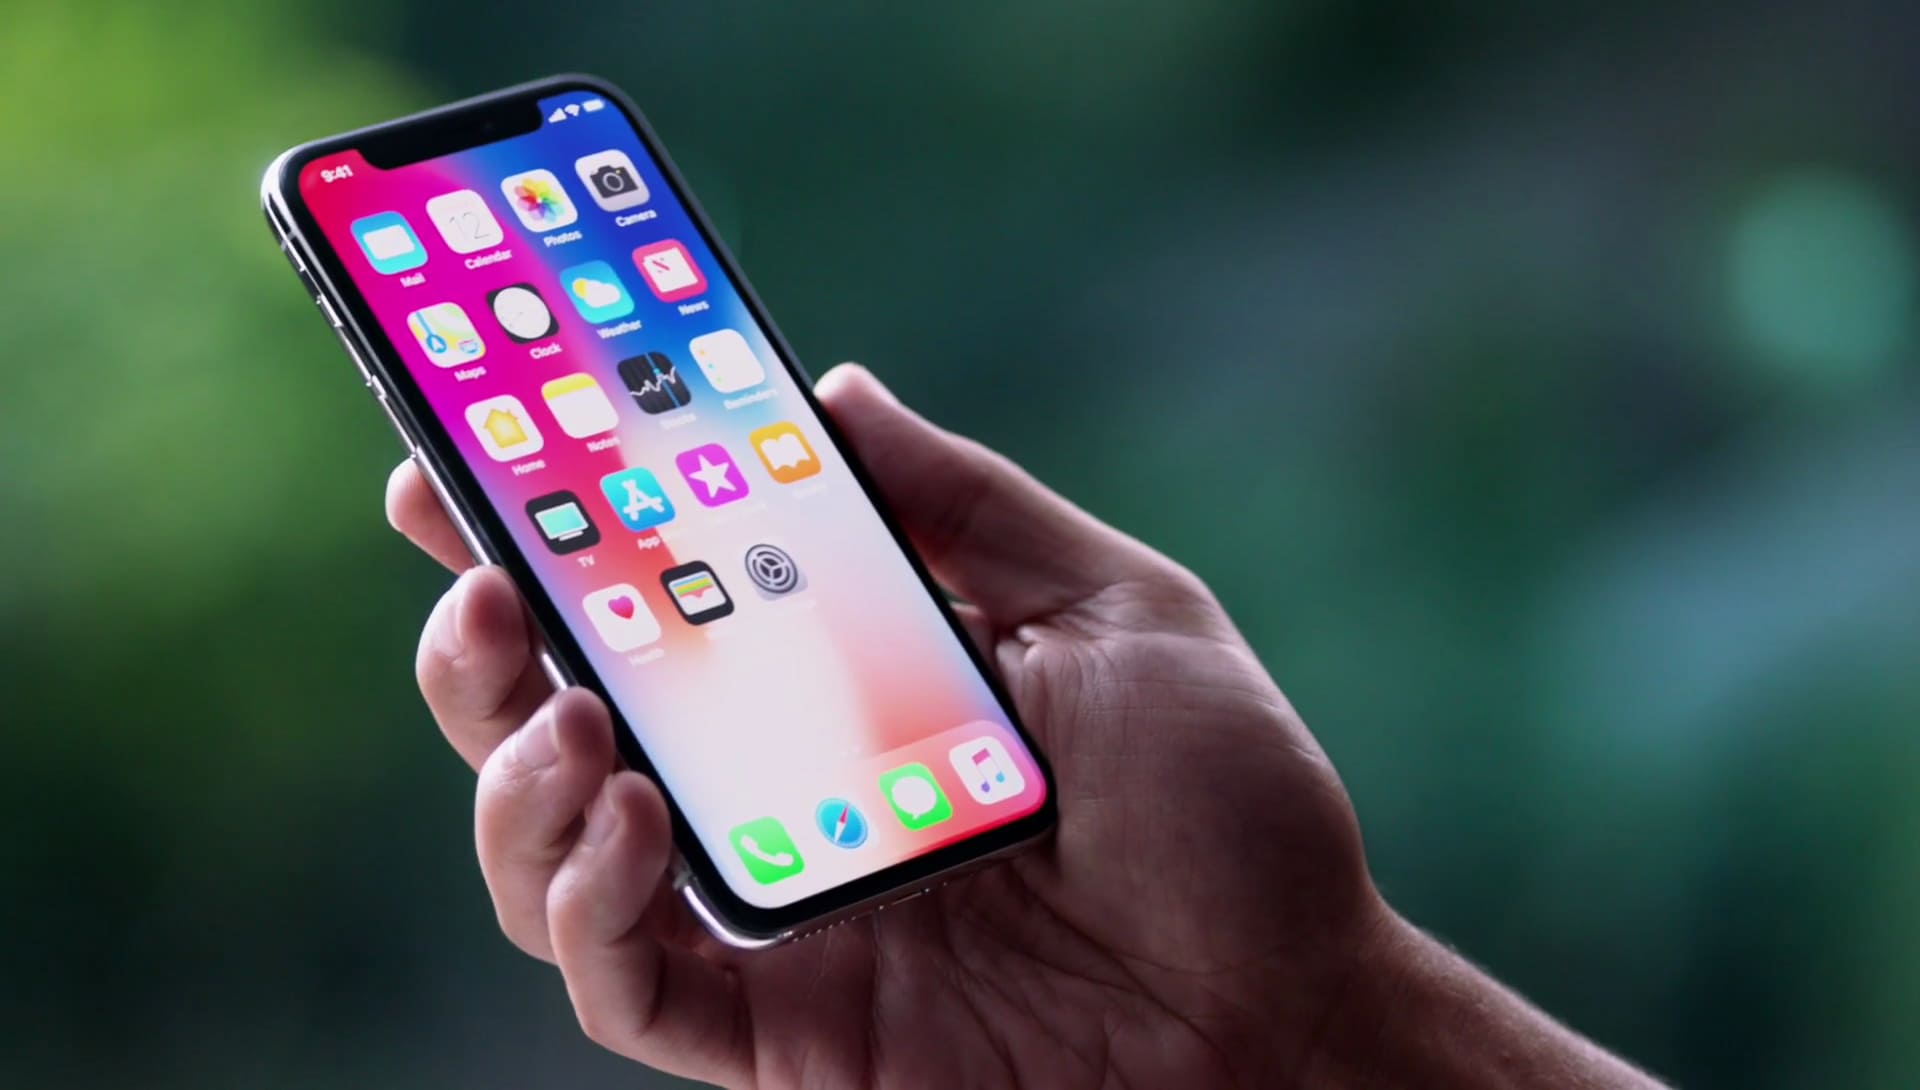 iPhone X – chiếc điện thoại được người dùng mong chờ nhất tính tới thời điểm hiện tại, dự kiến sẽ đạt doanh số rất cao. iPhone X năm nay chưa được phát hành và dự kiến ngày lên kệ ngày 3/11 tới, thì lại có một nguồn tin mới cho iPhone X 2018 sẽ có màn hình rộng tới 6.46 inch.